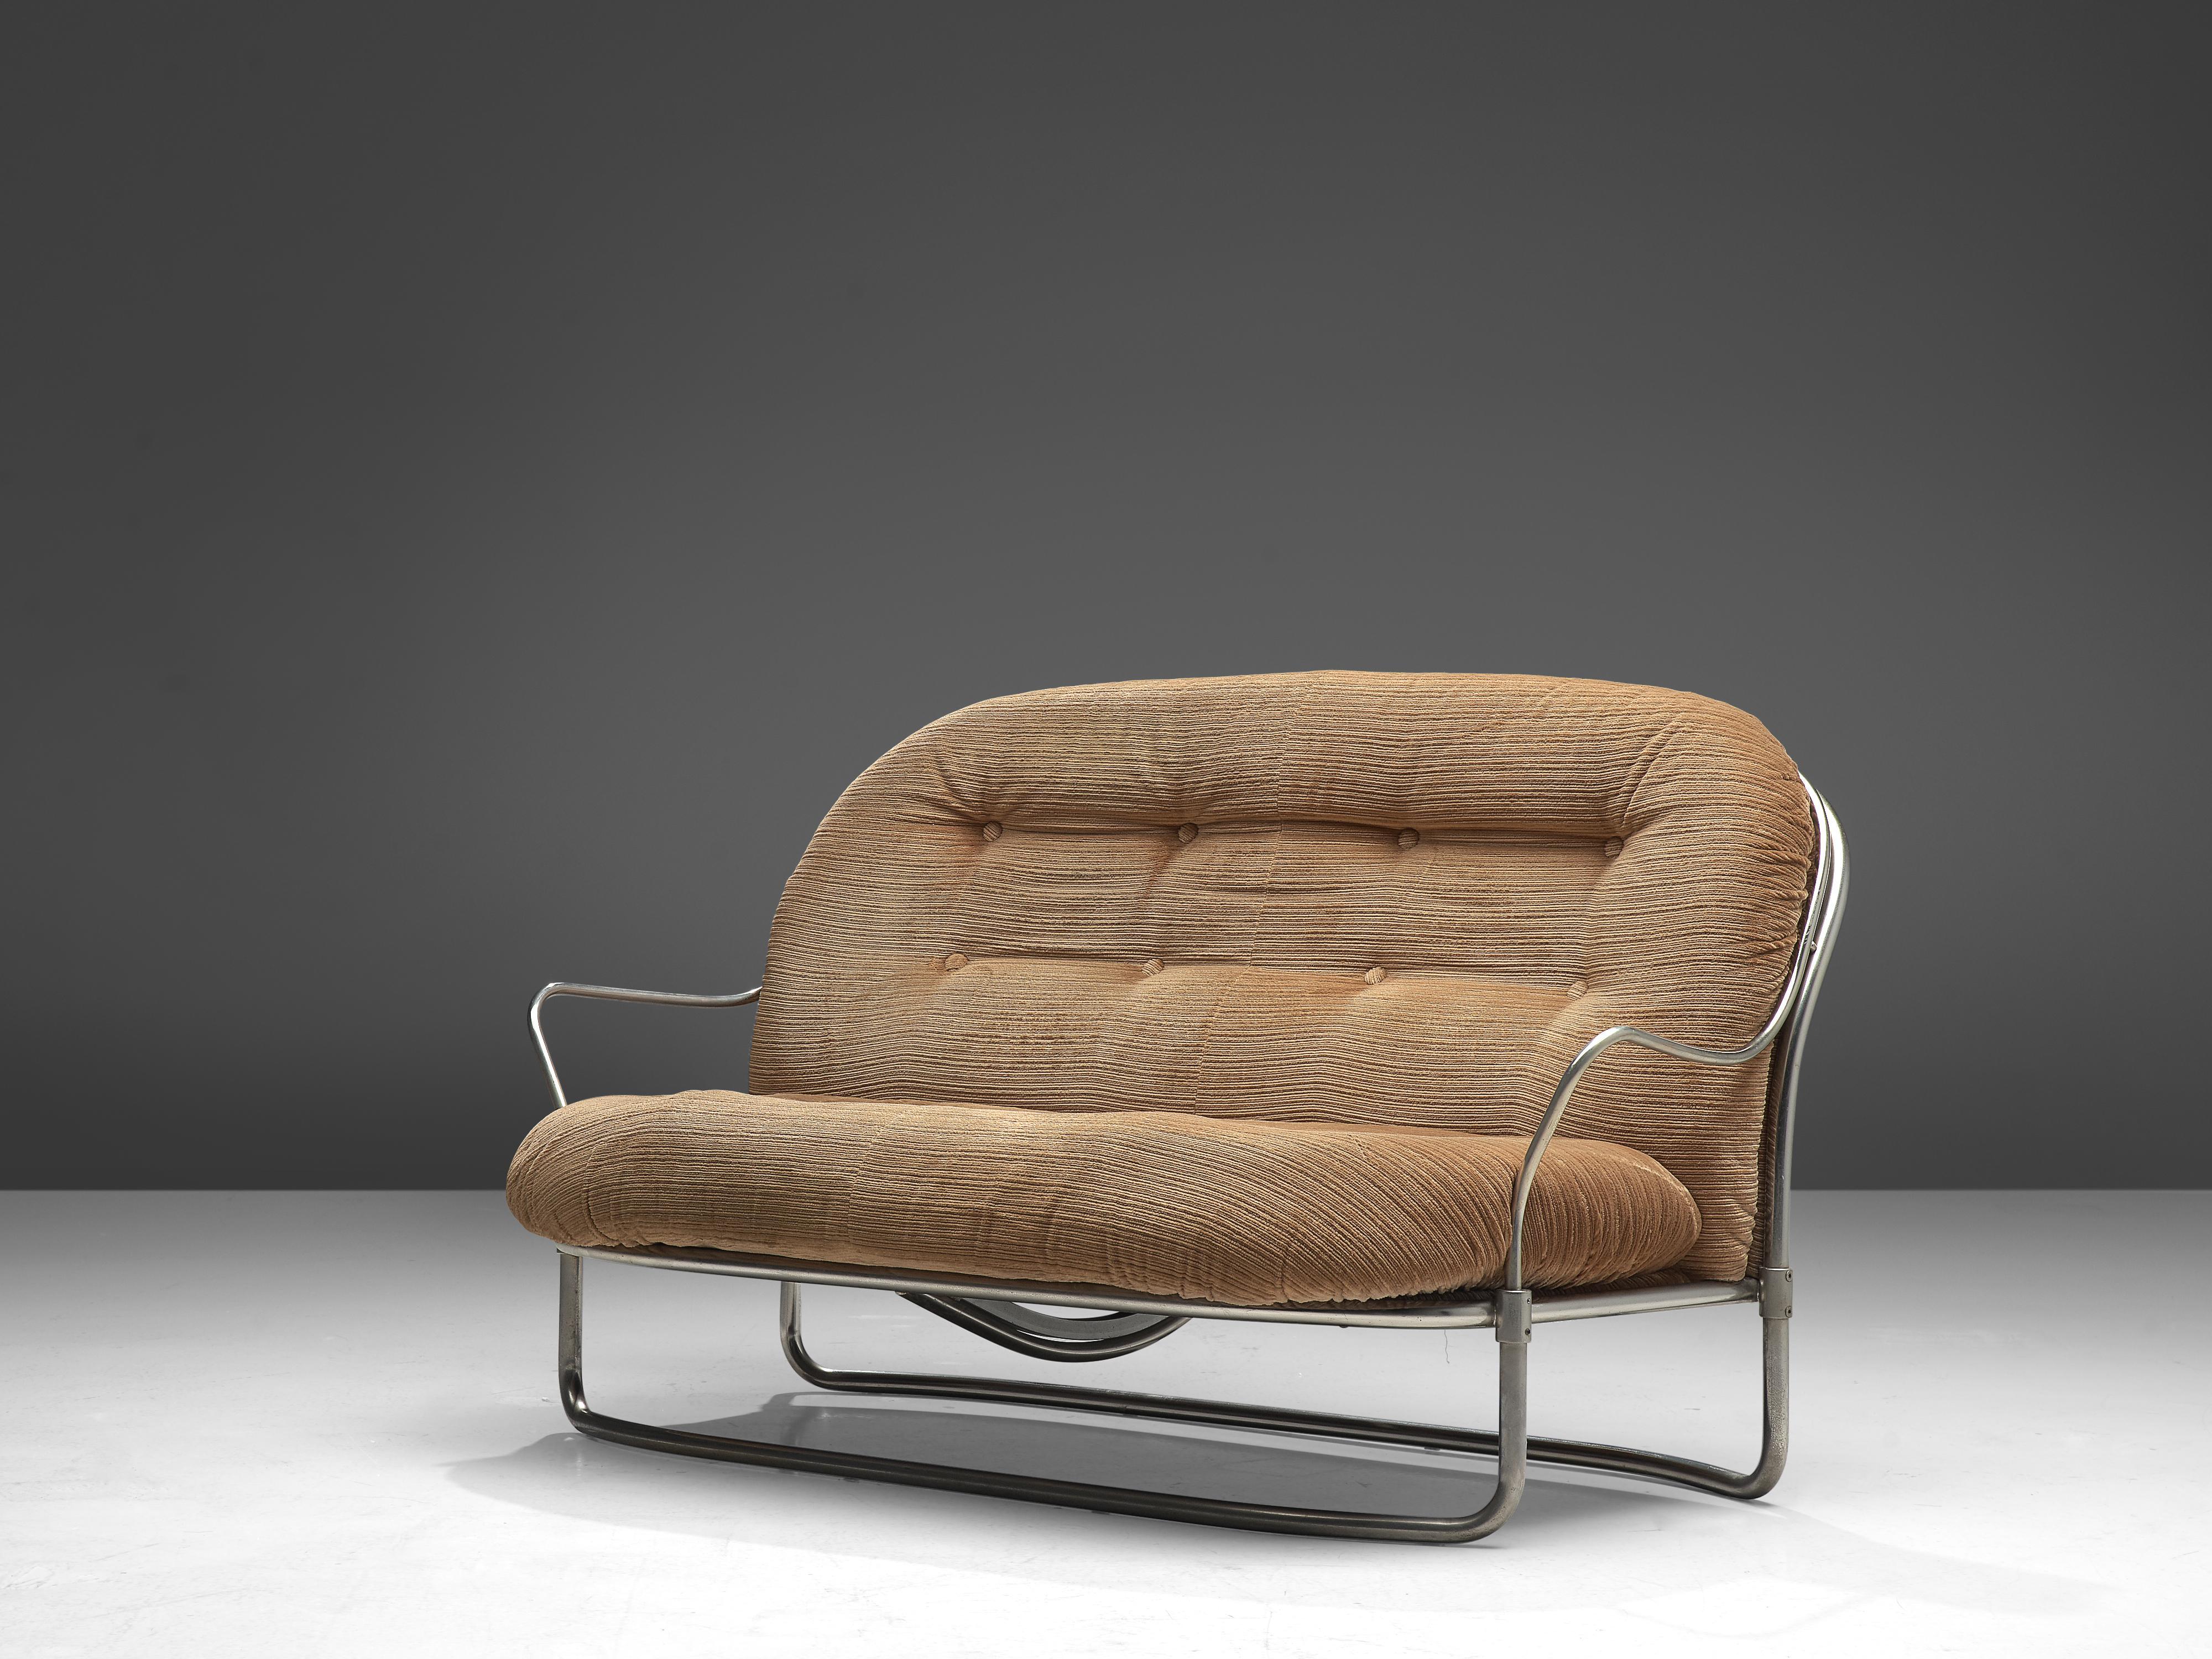 Carlo de Carli, Sofa, Stahl, Stoff, Italien, 1960er Jahre

Zweisitziges Sofa des italienischen Designers Carlo de Carli. Der Stahlrohrrahmen besteht aus gebogenen Teilen mit unterschiedlichen Durchmessern. Die Armlehnen sind zum Beispiel dünner als